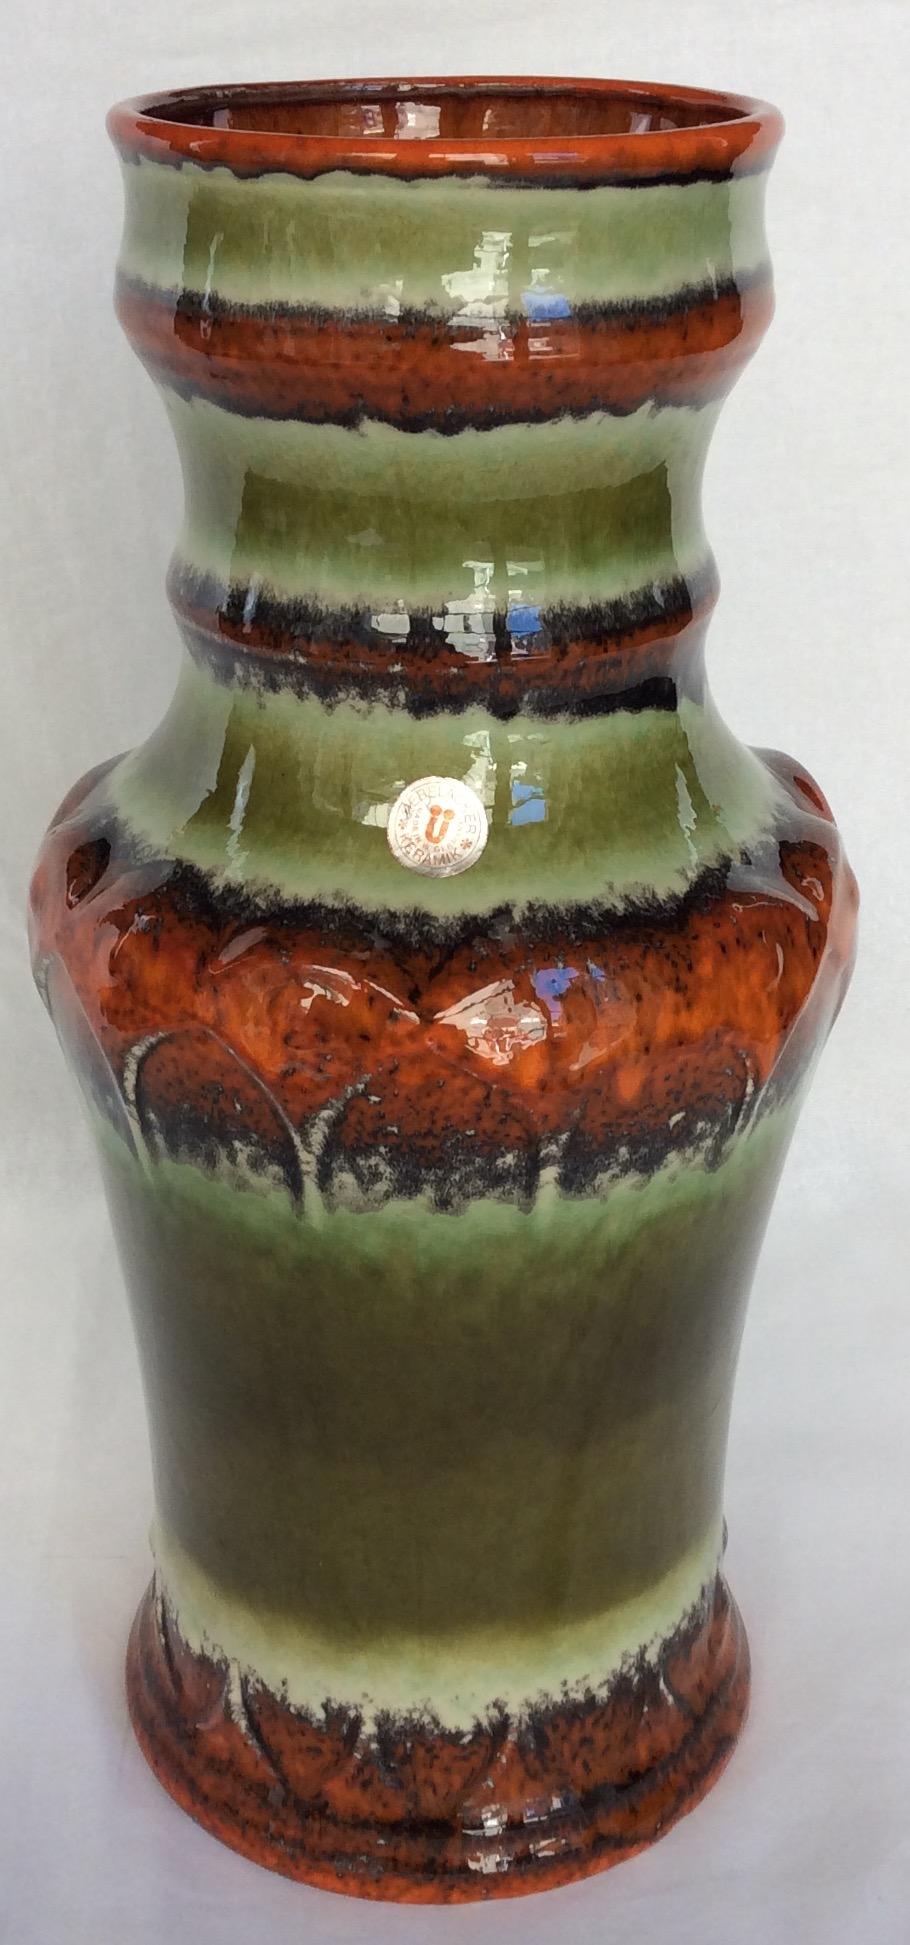 Diese hohe Sammlervase aus der Mitte des Jahrhunderts wurde um 1965 von dem bekannten westdeutschen Keramikhersteller Uebelacker Keramik hergestellt. Die Vase hat wunderschöne grüne, orange, beige und braune Farbtöne und ist perfekt glasiert. Dieses